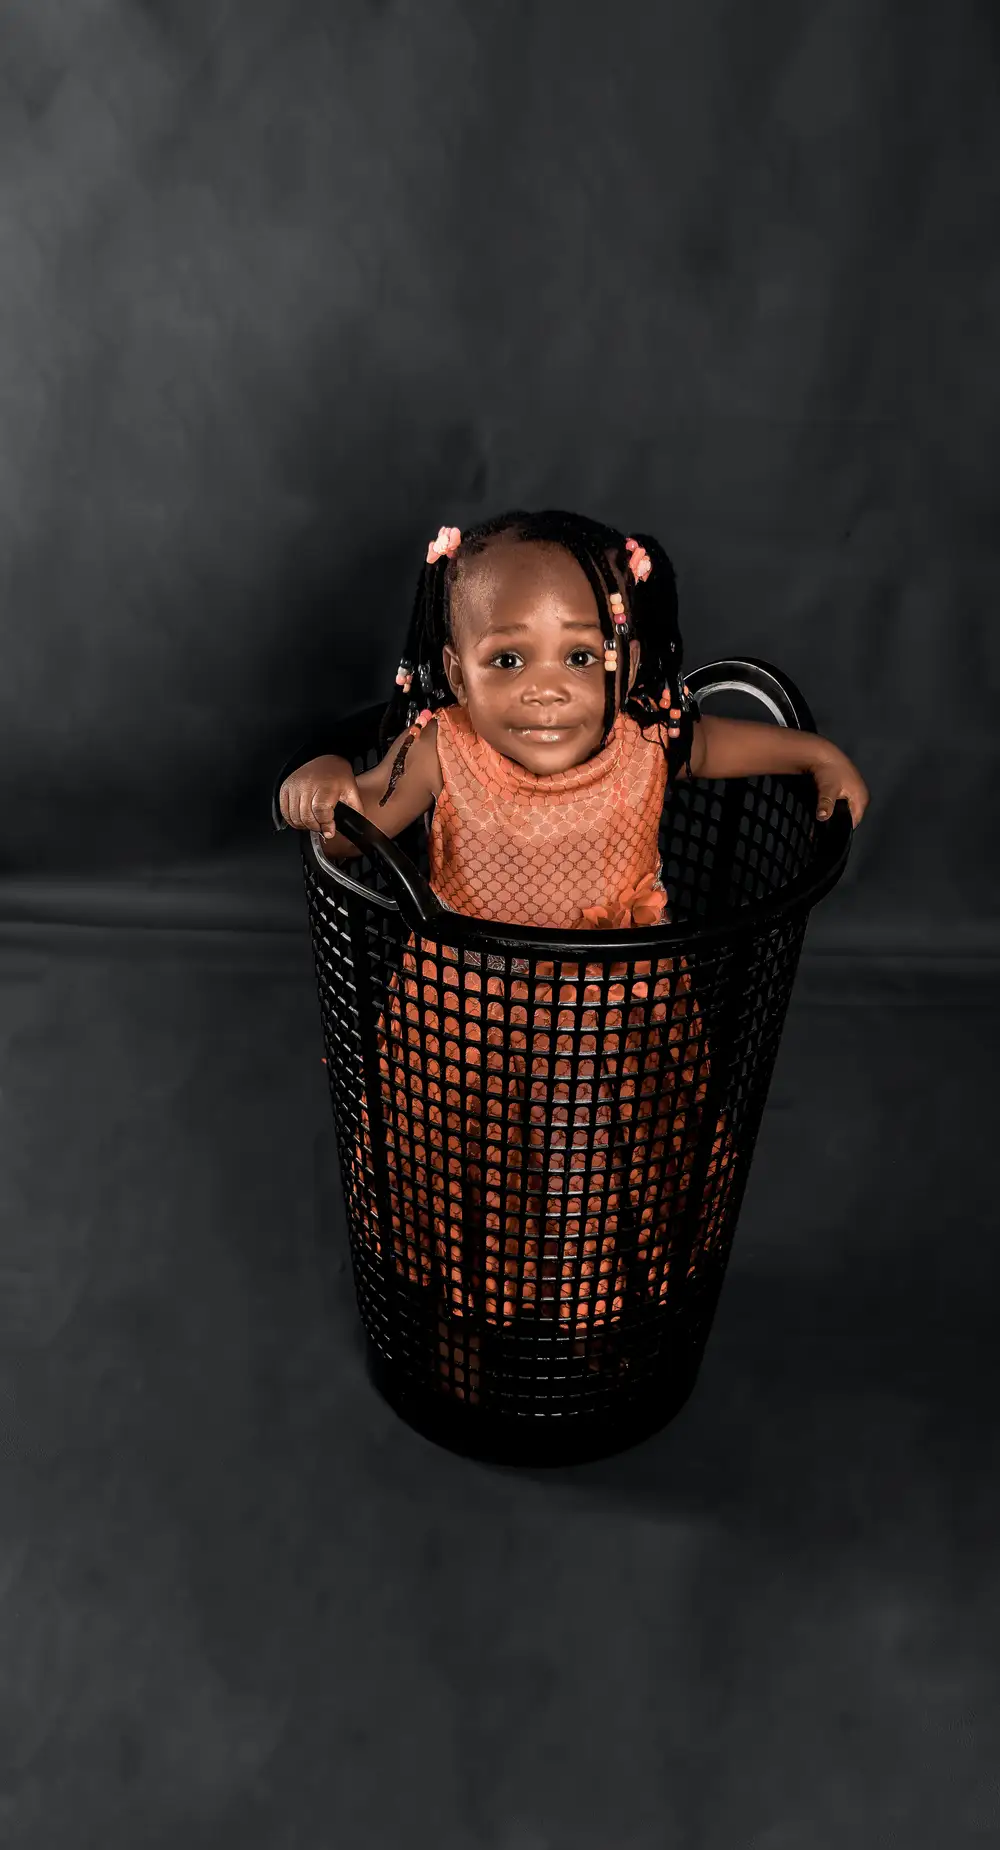 Little girl in a basket